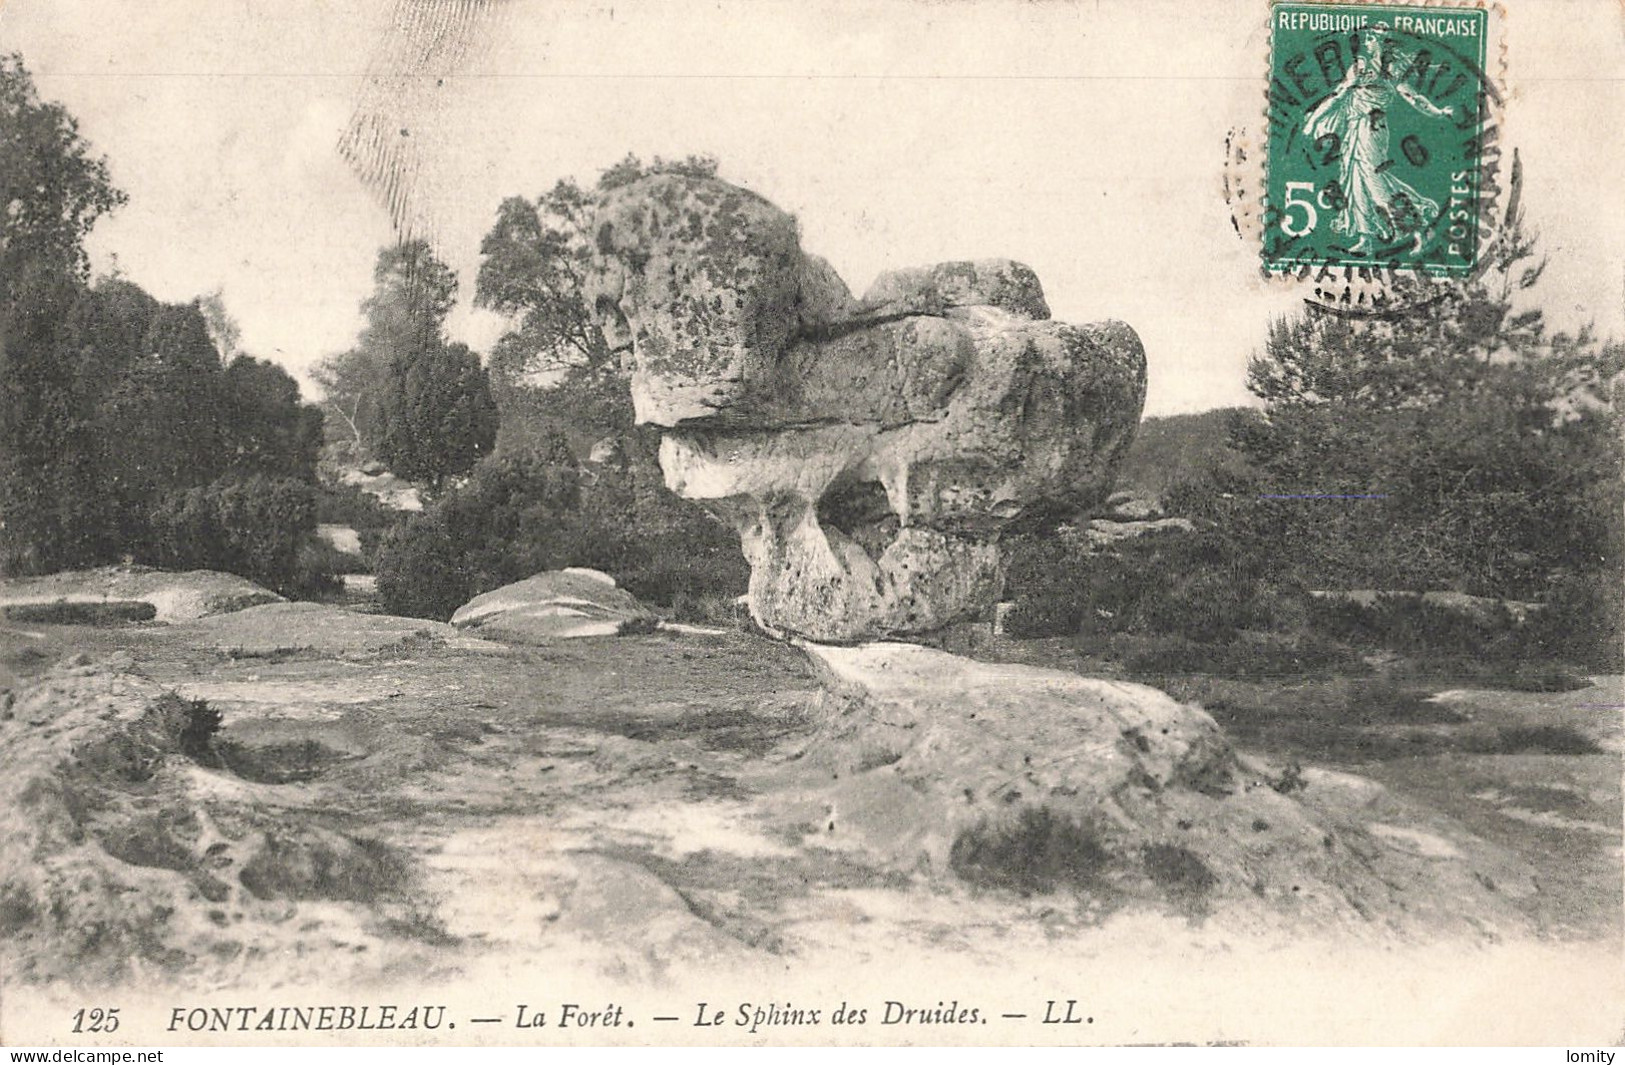 Destockage lot de 35 cartes postales CPA Seine et Marne Melun coulommiers foret Fontainebleau Tournan Provins Marles